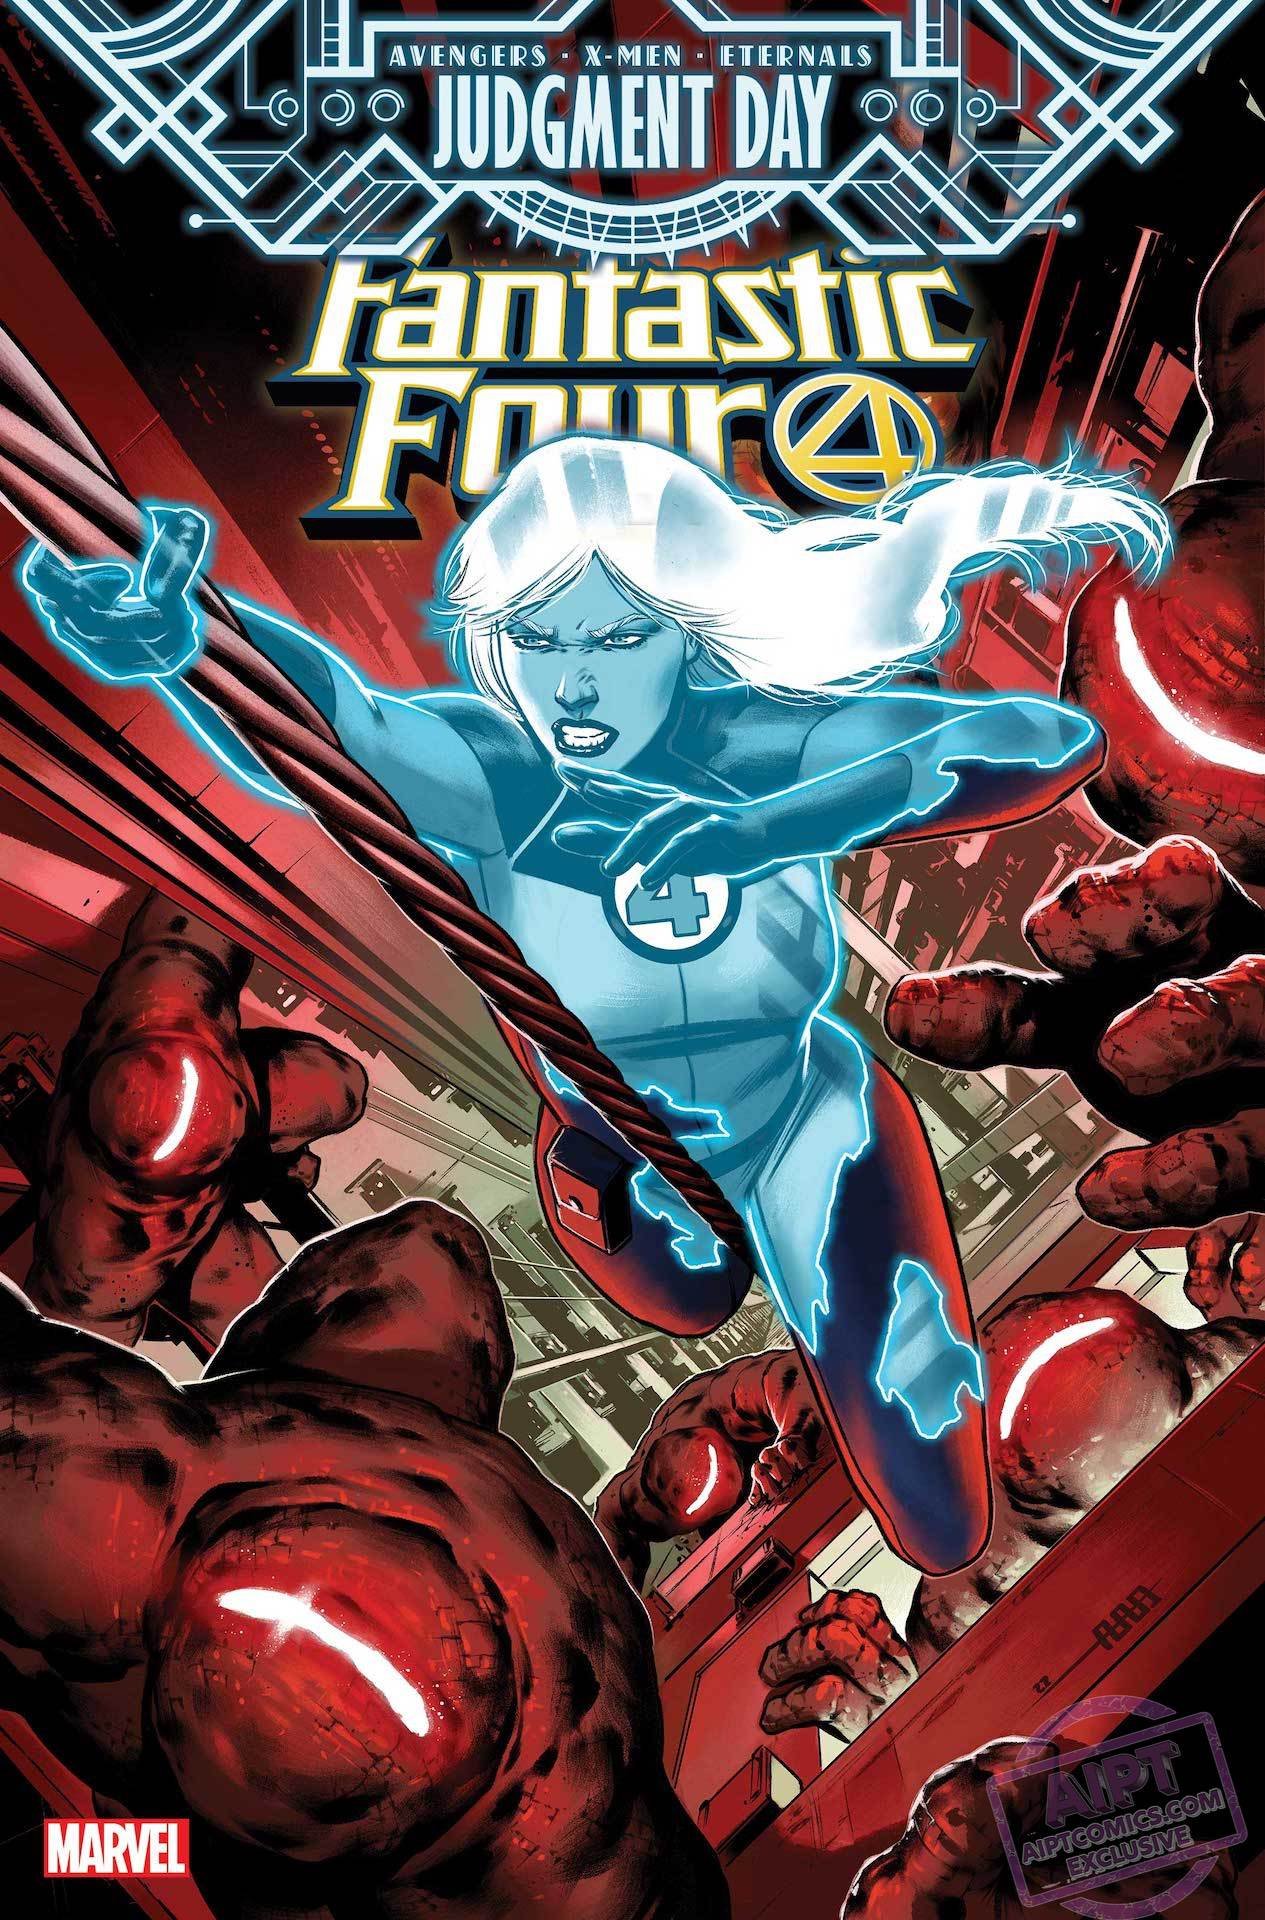 Cover di Fantastic Four 47 di CAFU, con cui i Fantastici Quattro vengono coinvolti in Judgment Day